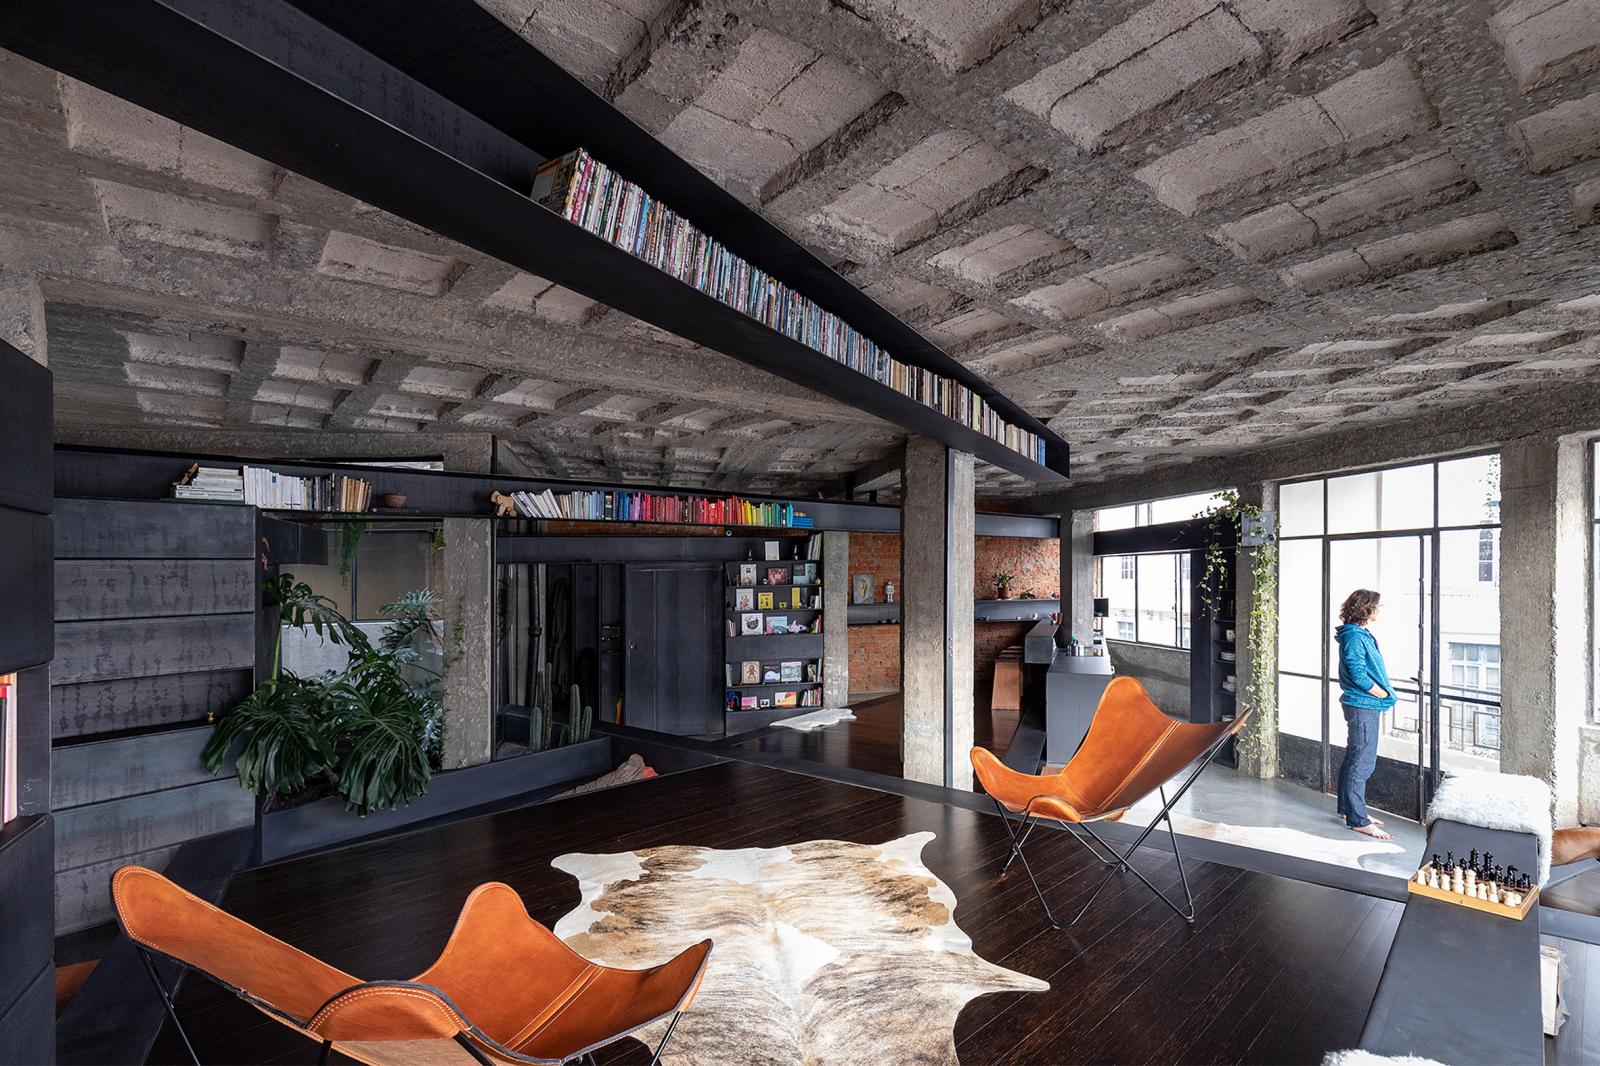 Nội thất căn hộ thiết kế sáng tạo với kệ sách được bố trí trên trần nhà